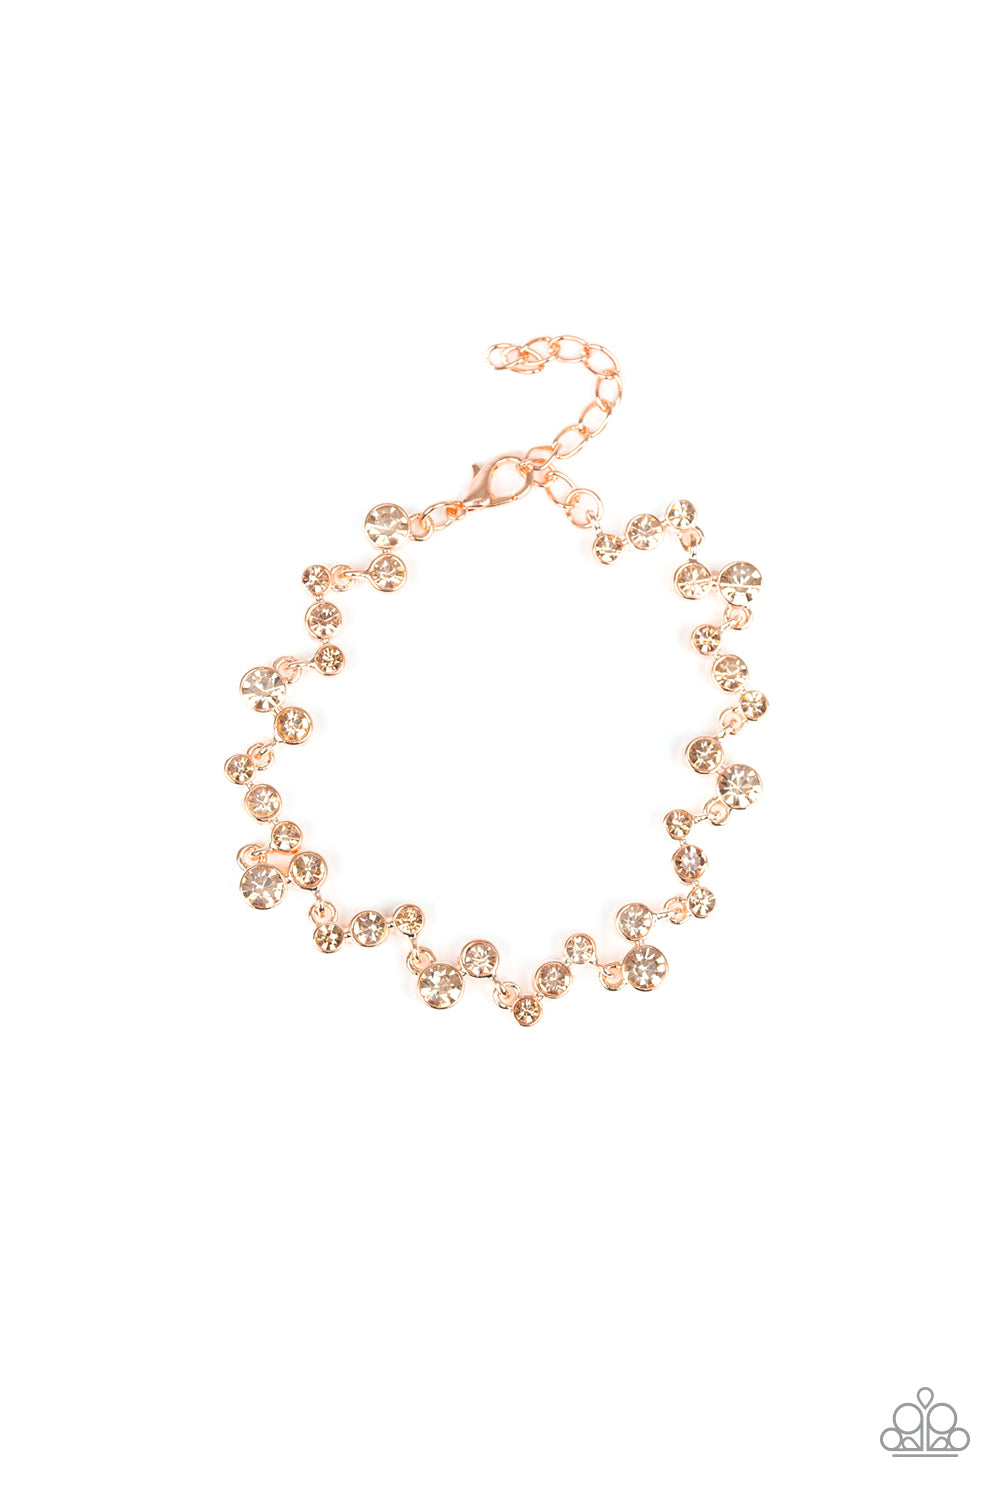 Starlit Stunner Bracelet (Copper, White)